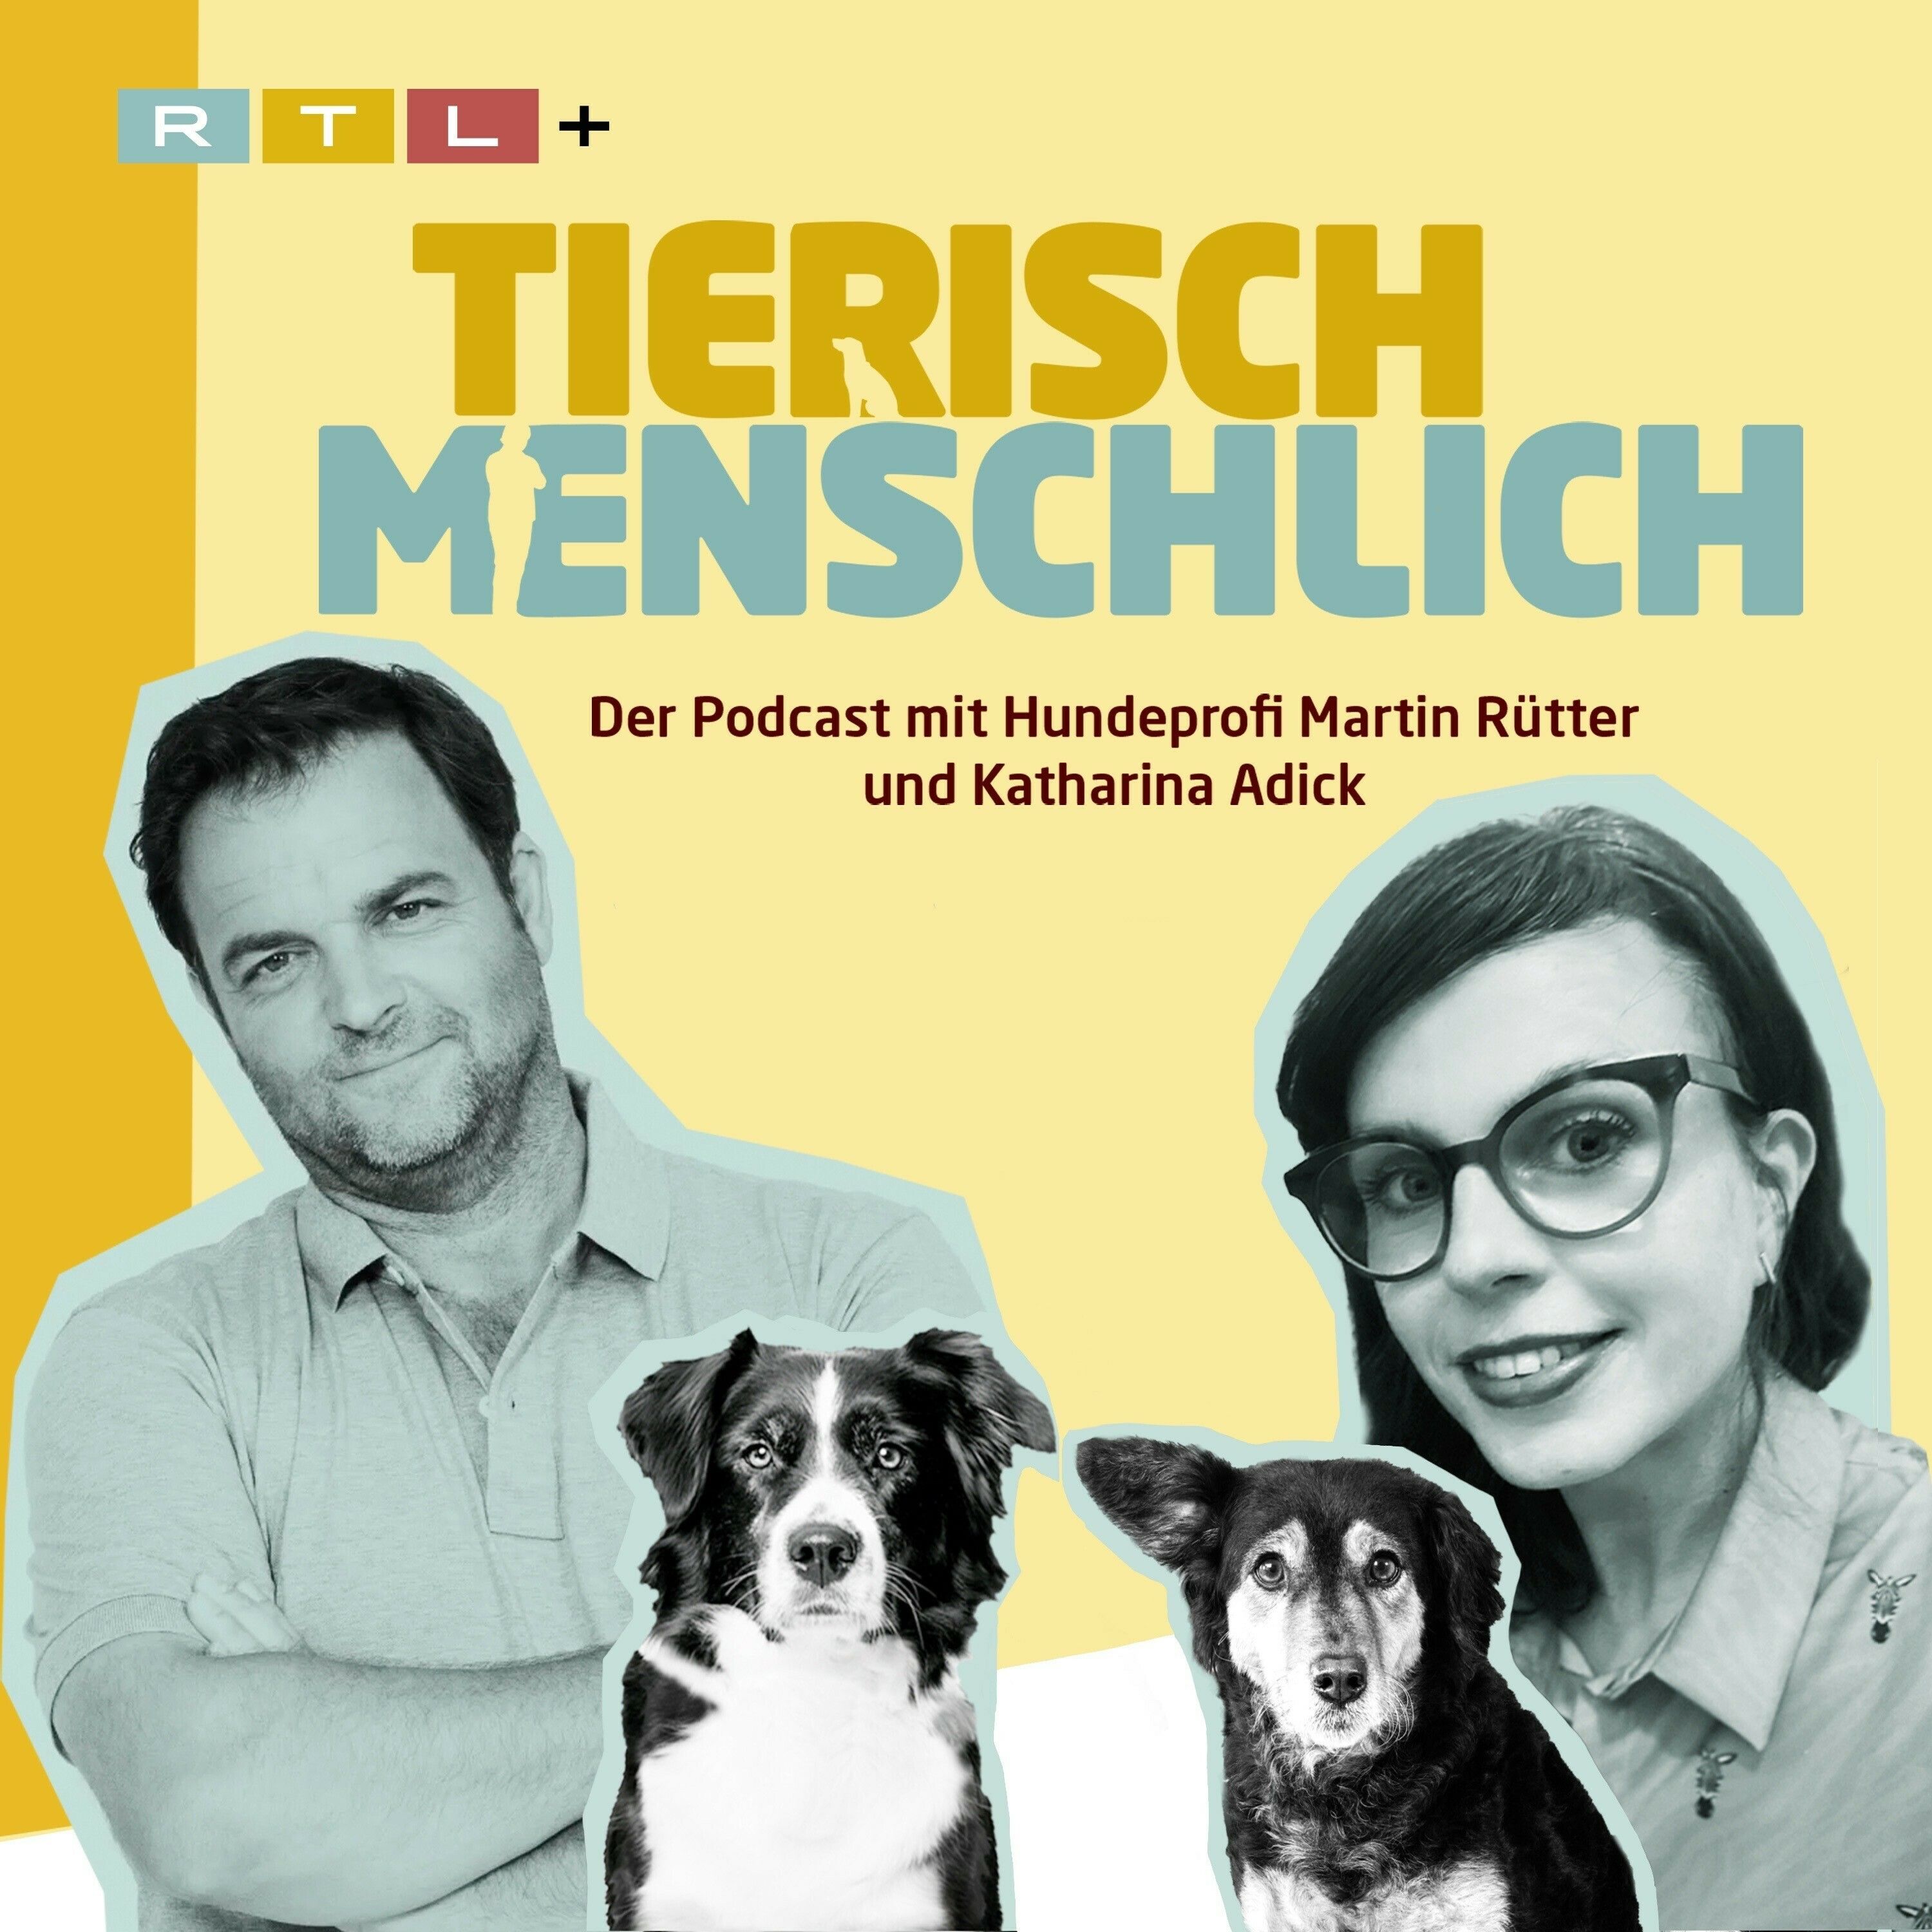 Tierisch menschlich mit Hundeprofi Martin Rütter & Katharina Adick, Podcast online hören